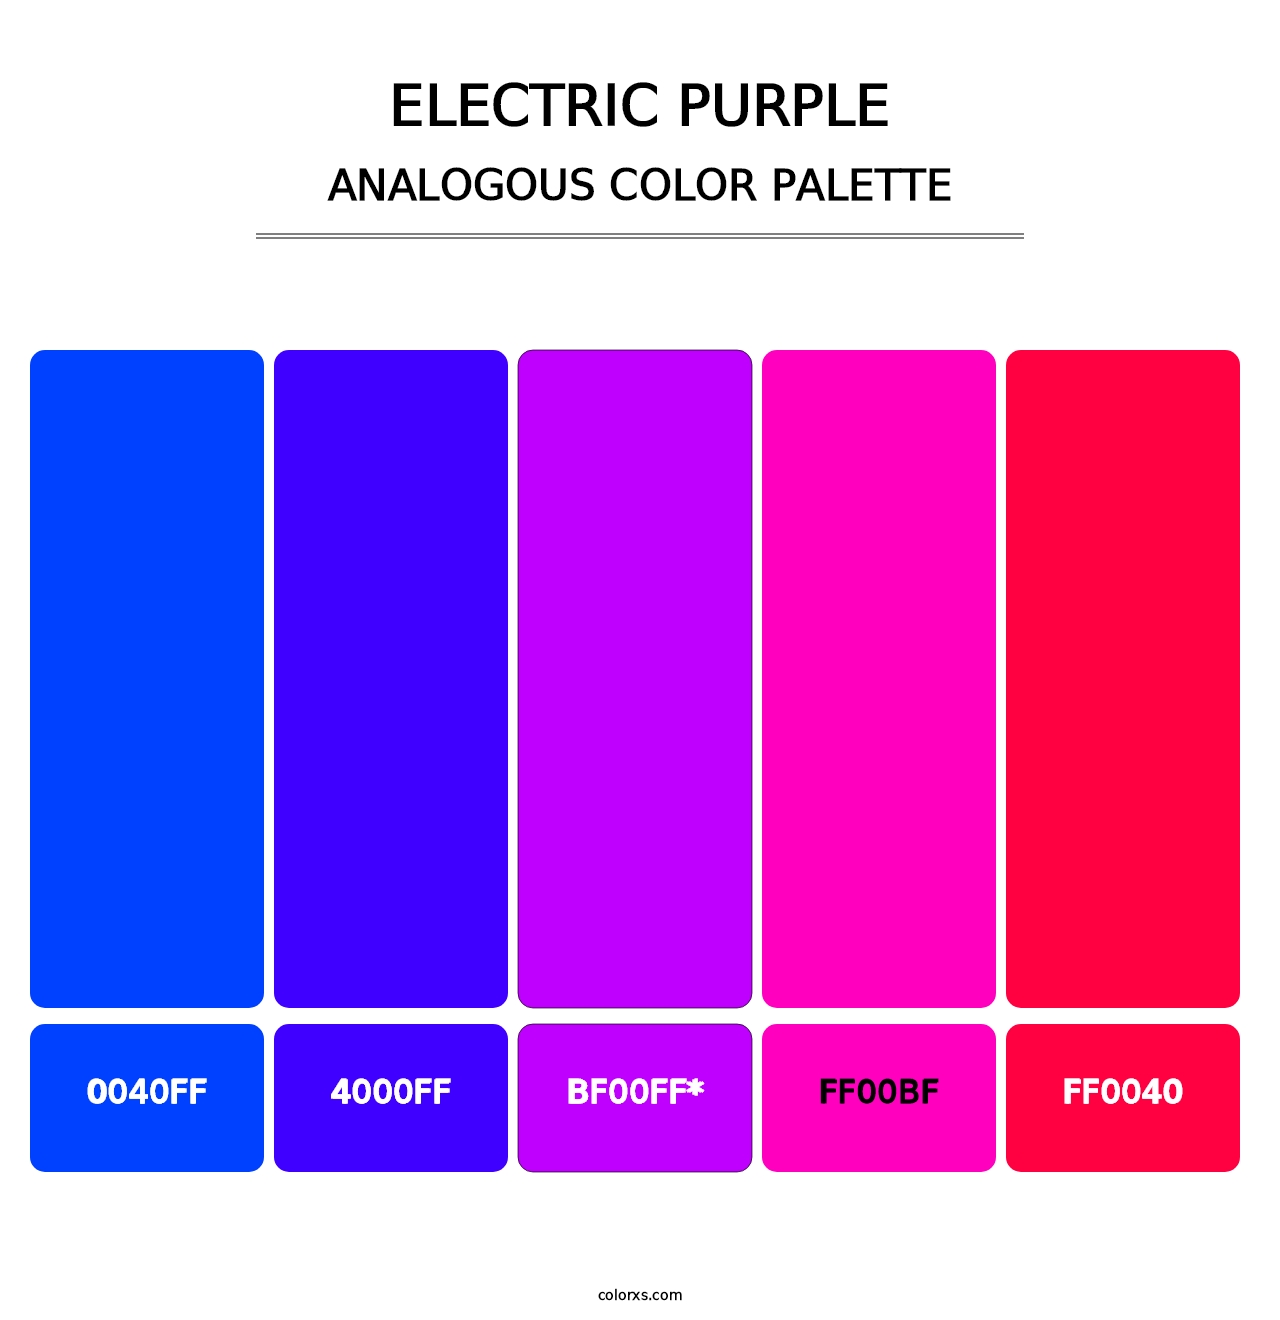 Electric Purple - Analogous Color Palette